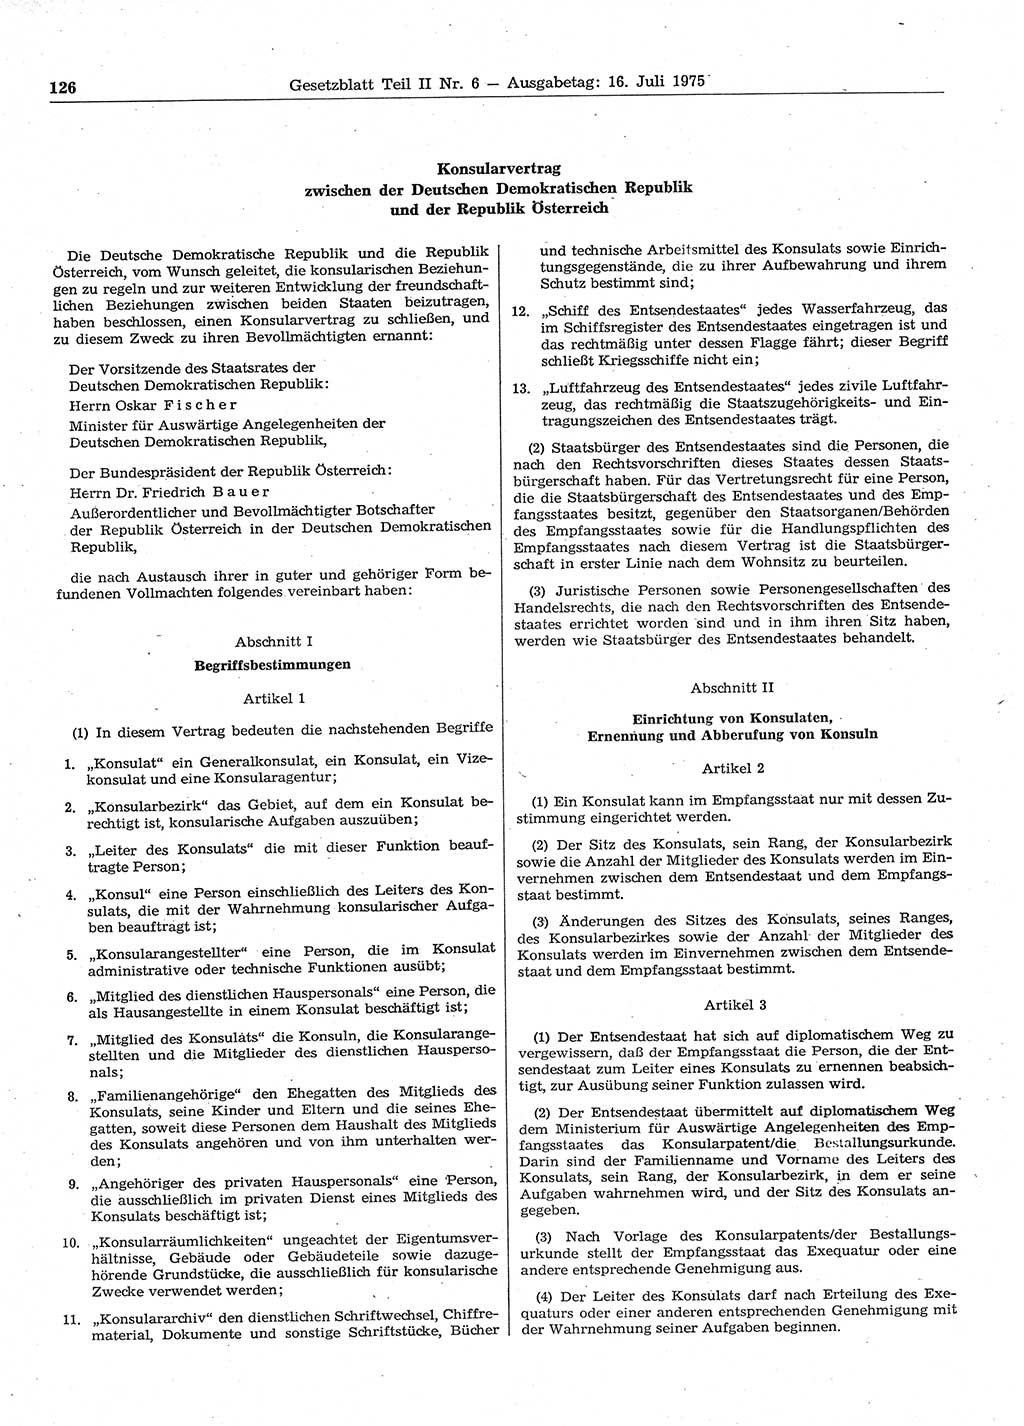 Gesetzblatt (GBl.) der Deutschen Demokratischen Republik (DDR) Teil ⅠⅠ 1975, Seite 126 (GBl. DDR ⅠⅠ 1975, S. 126)